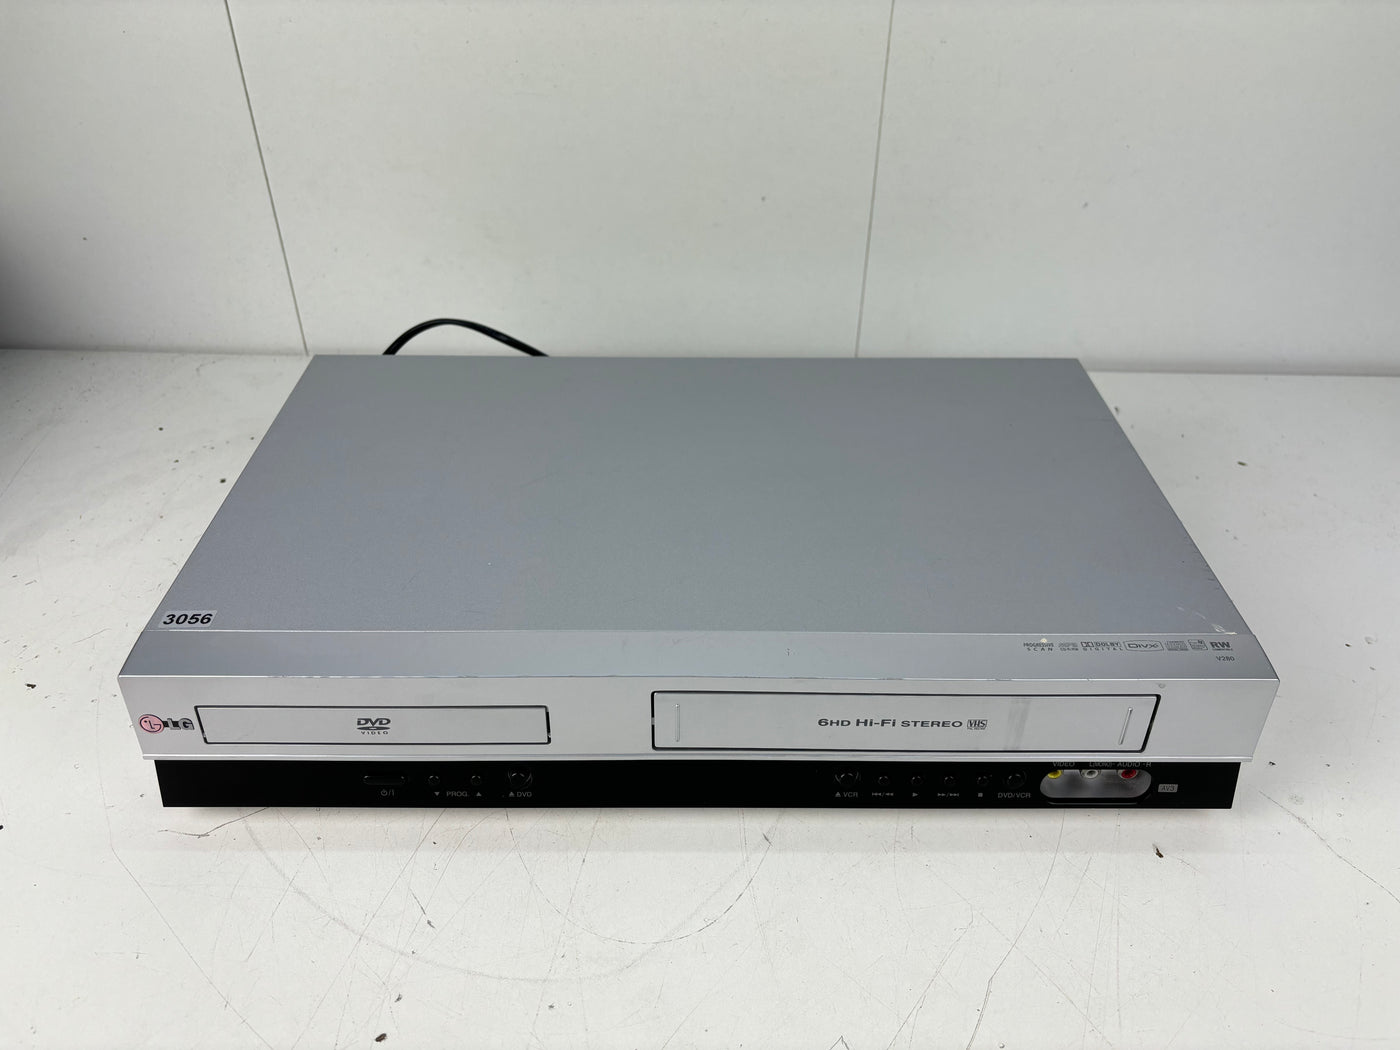 LG V280 Video Cassette Recorder / DVD Combi